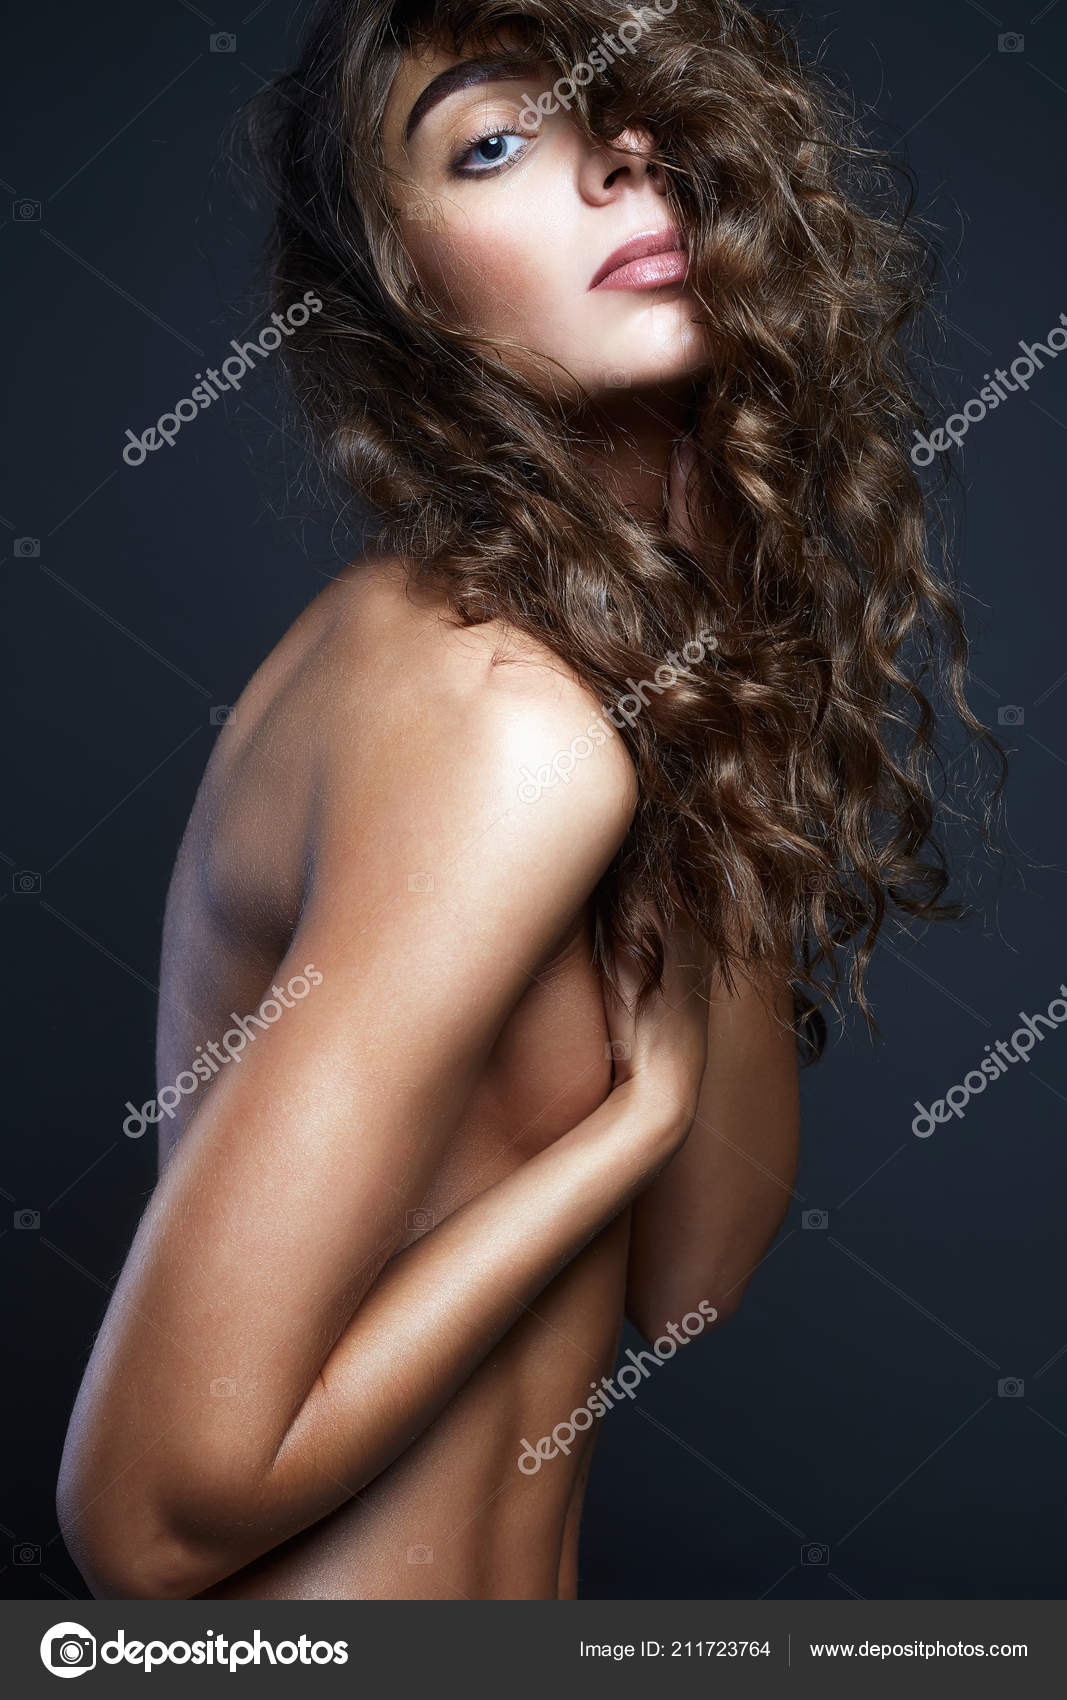 Perfect beautiful girl nude